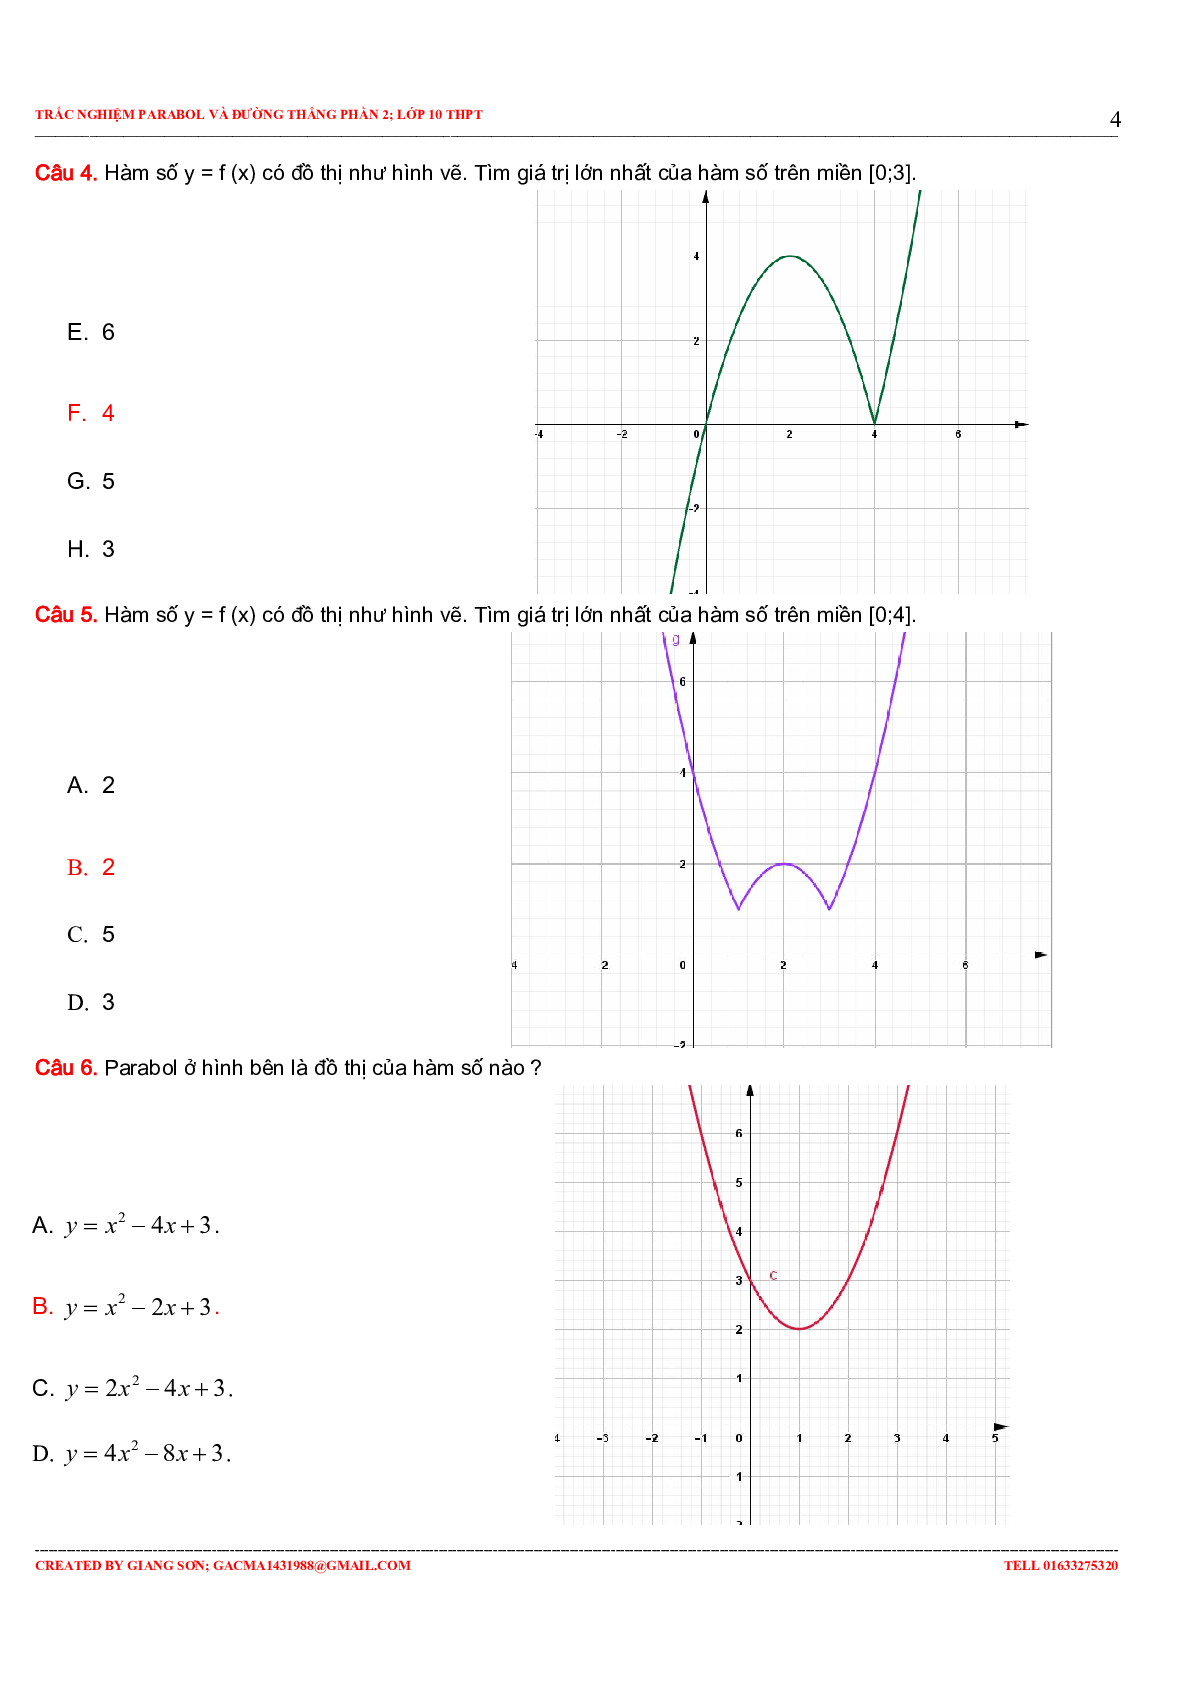 97 Bài tập trắc nghiệm Parabol và đường thẳng phần 2 (trang 4)